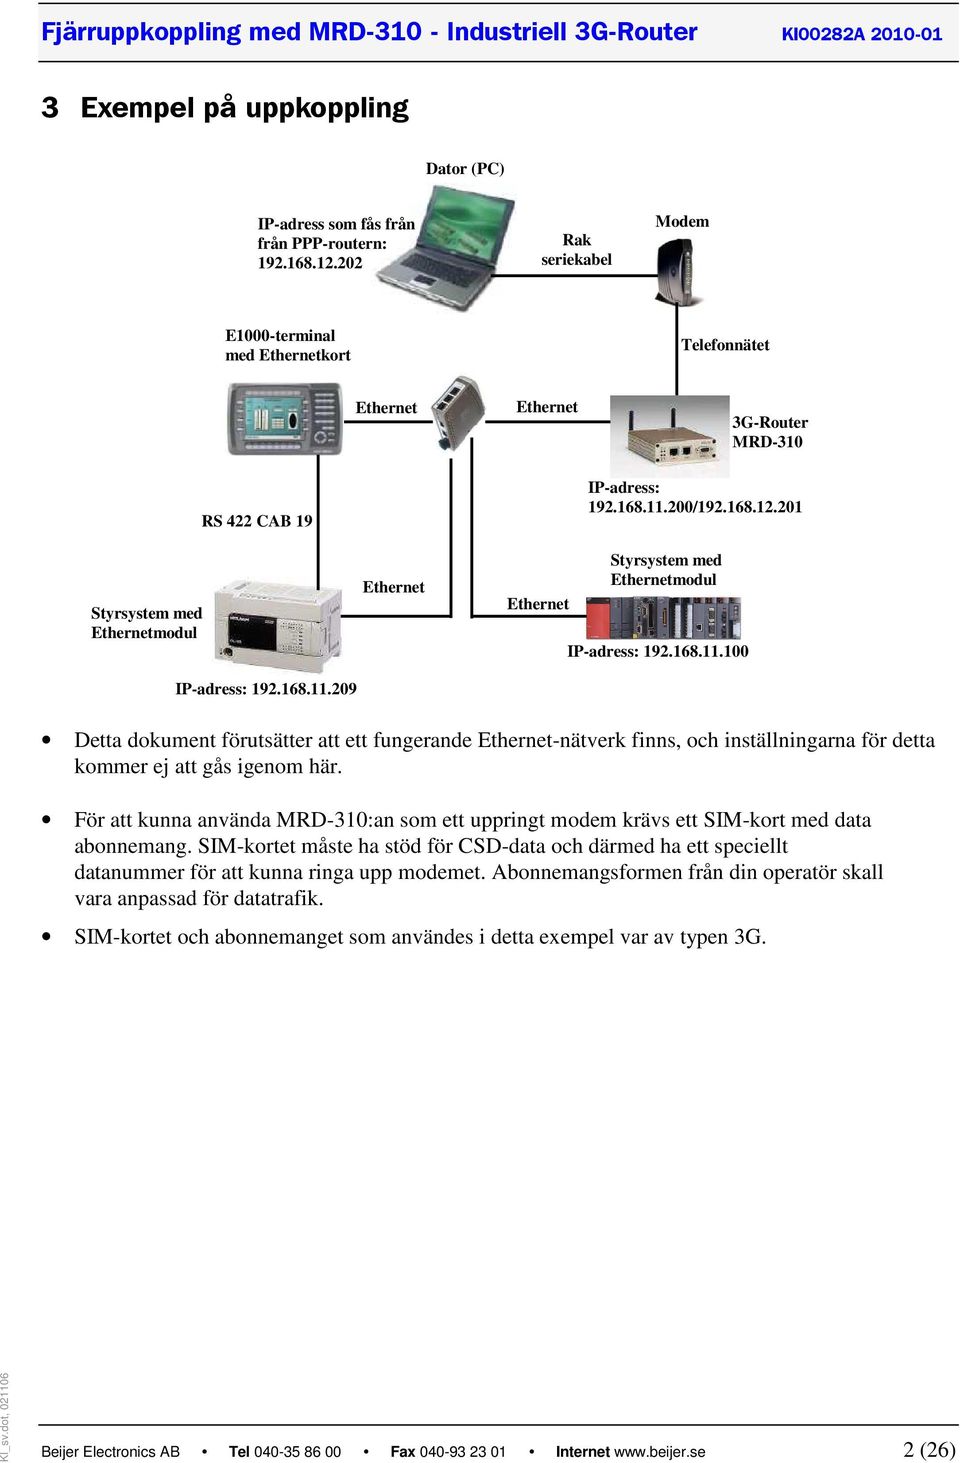 3G-Router MRD-310 PPP IP-adress: 192.168.11.200/192.168.12.201 IP-adress: 192.168.11.100 IP-adress: 192.168.11.209 Detta dokument förutsätter att ett fungerande Ethernet-nätverk finns, och inställningarna för detta kommer ej att gås igenom här.